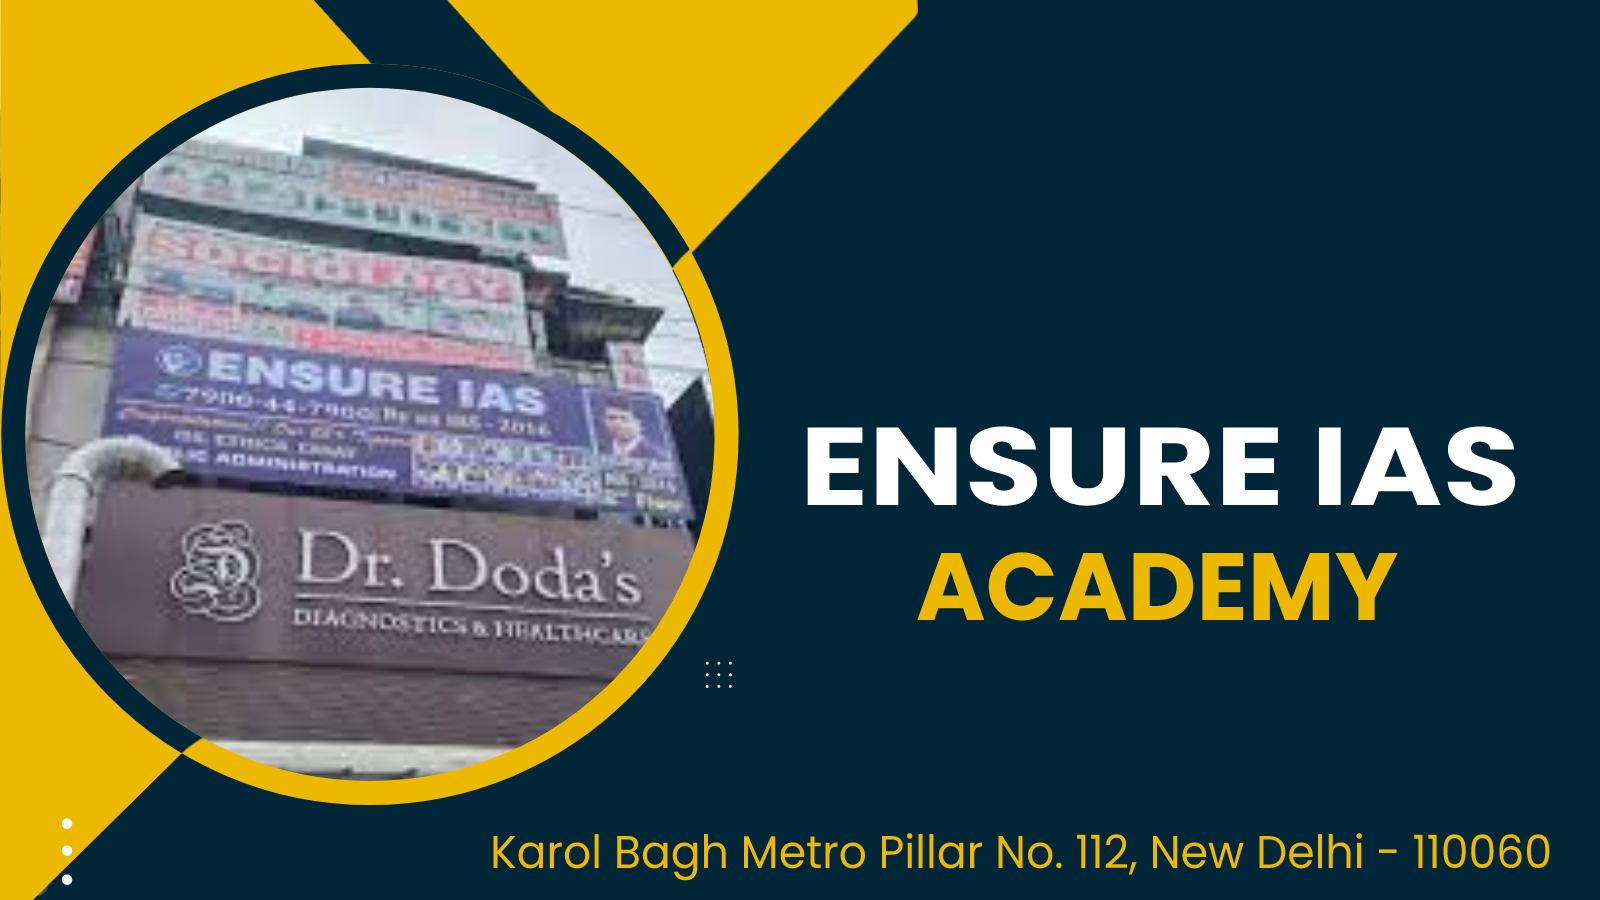 Ensure IAS Academy Delhi